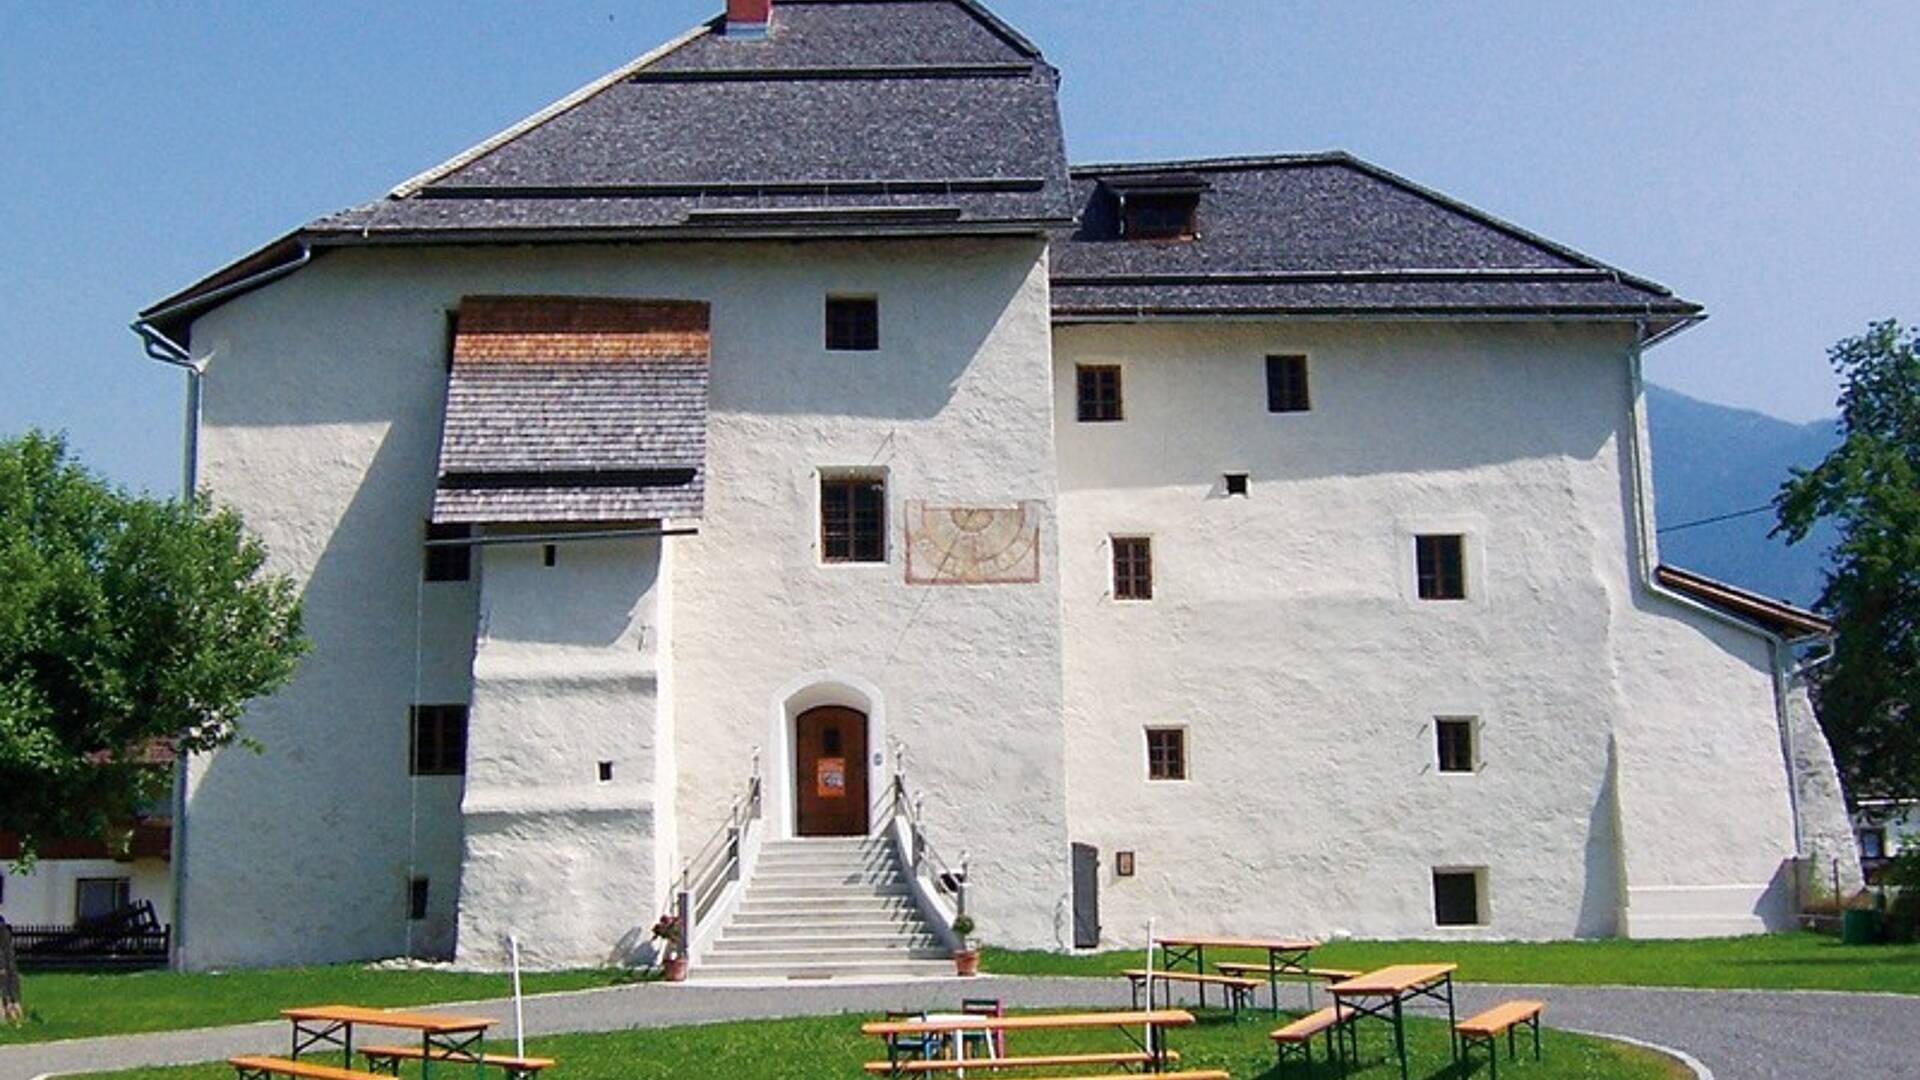 Gailtaler Heimatmuseum